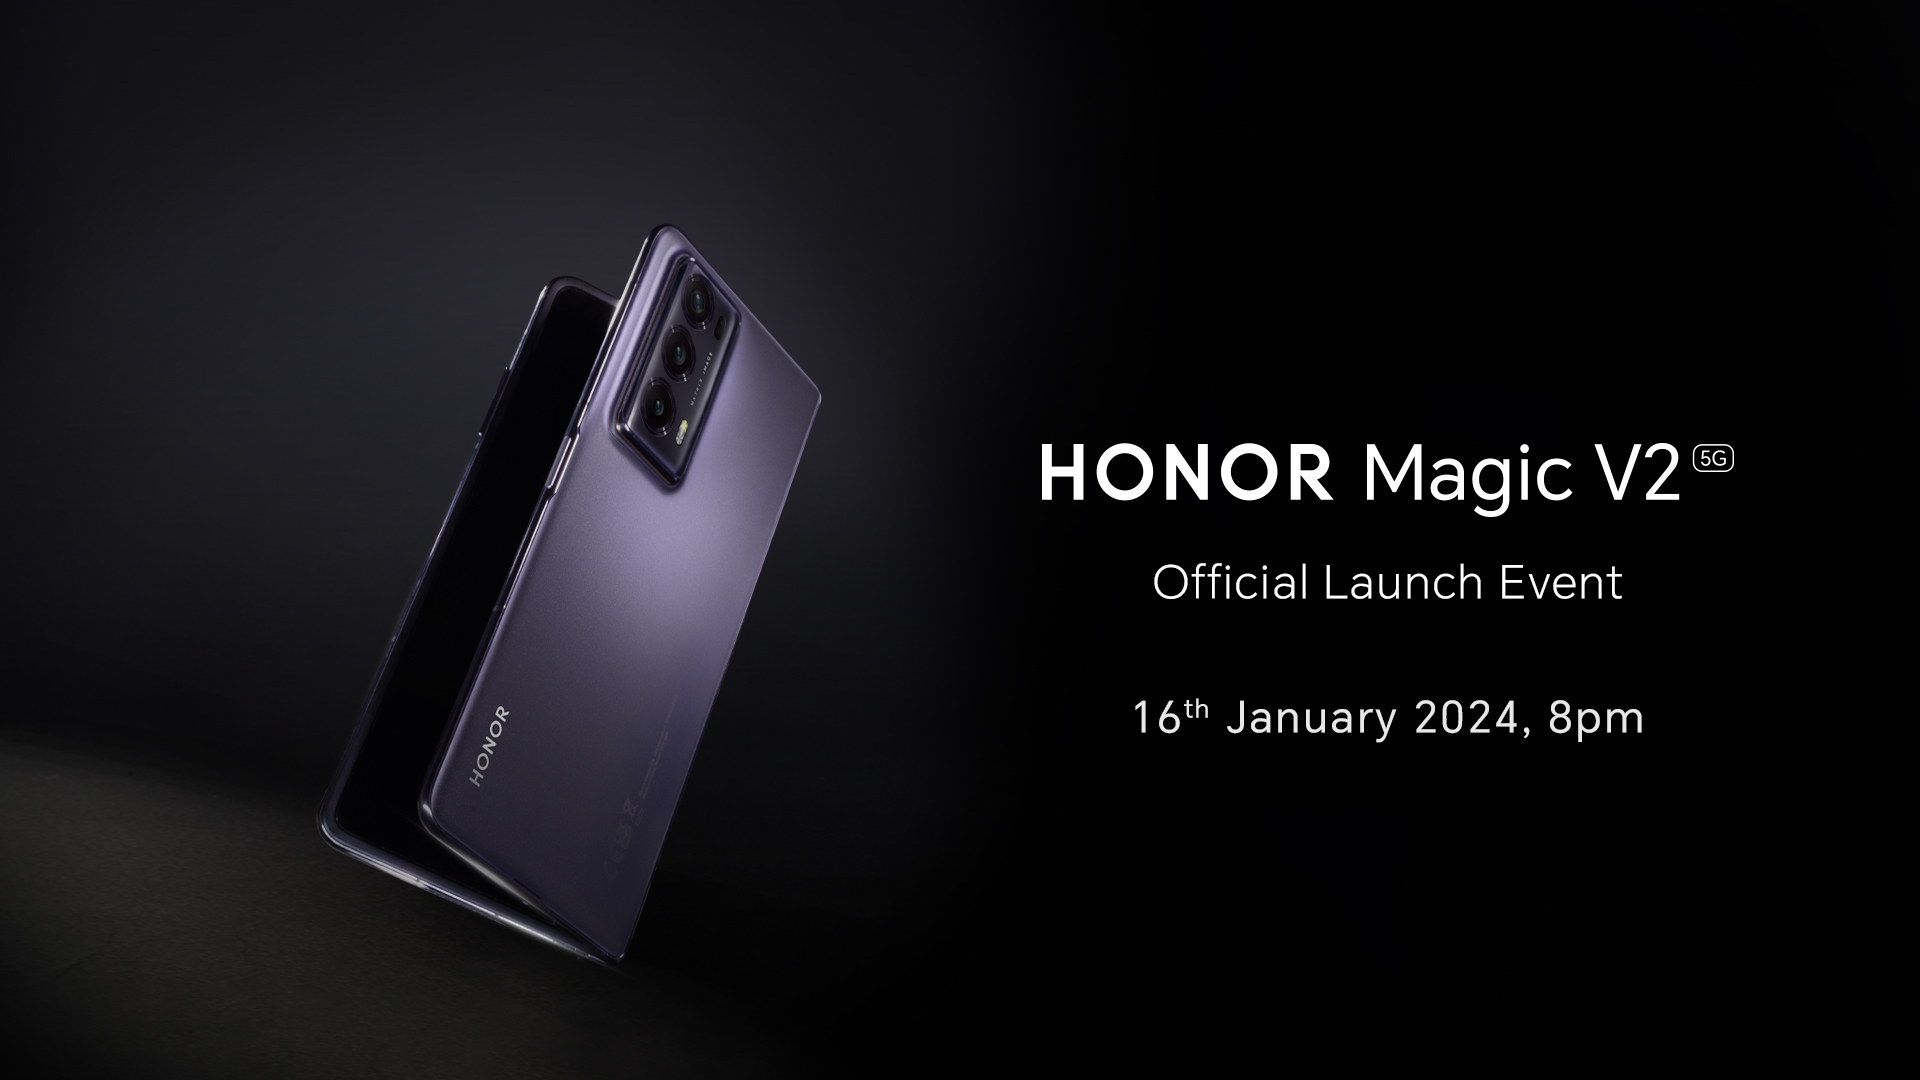 HONOR Magic V2 1 月 16 日正式登陆大马